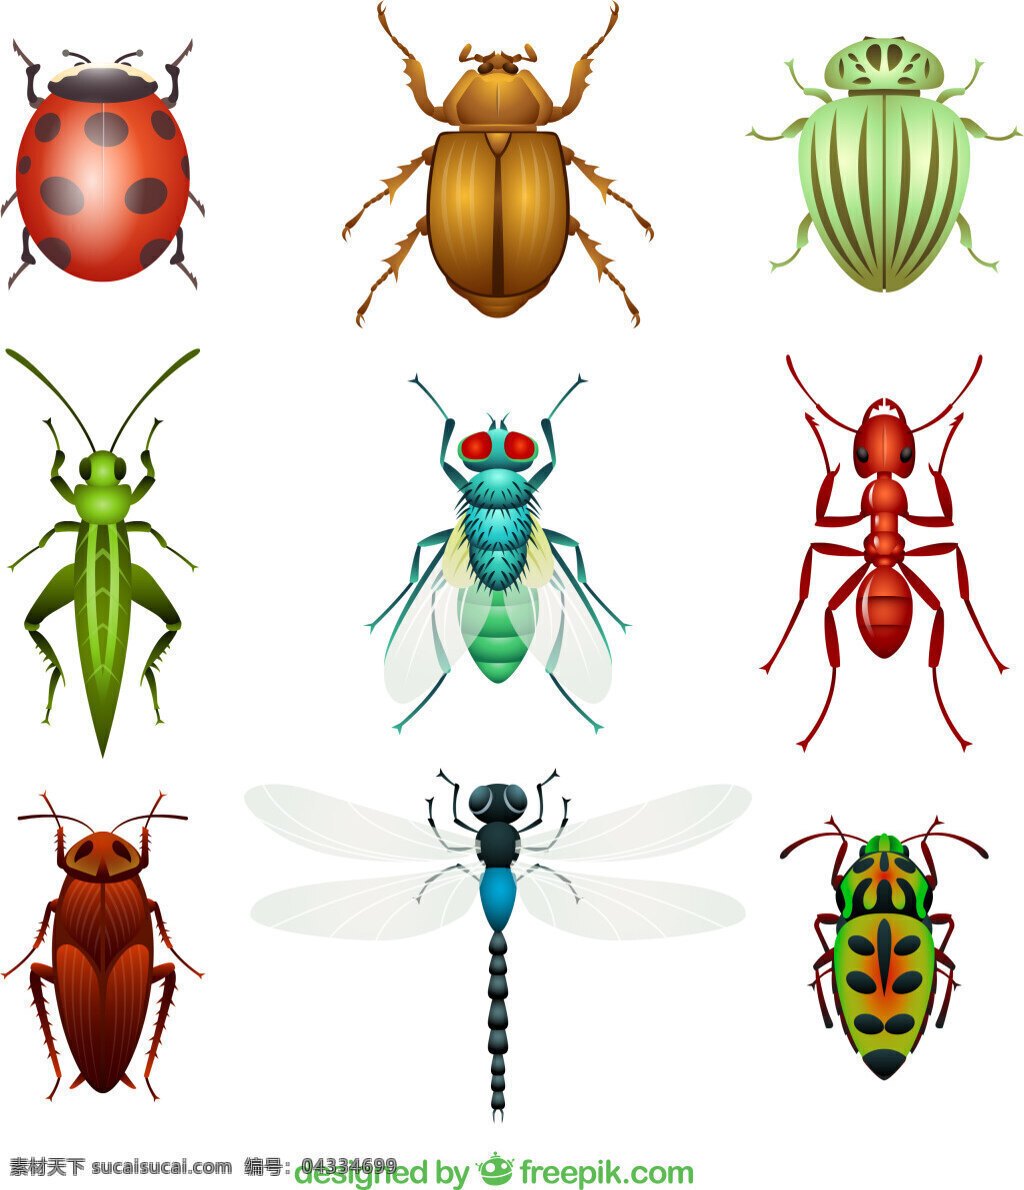 昆虫设计矢量 瓢虫 金龟子 甲壳虫 苍蝇 蚂蚁 蟑螂 蜻蜓 蚱蜢 昆虫 动物 矢量图 ai格式 白色